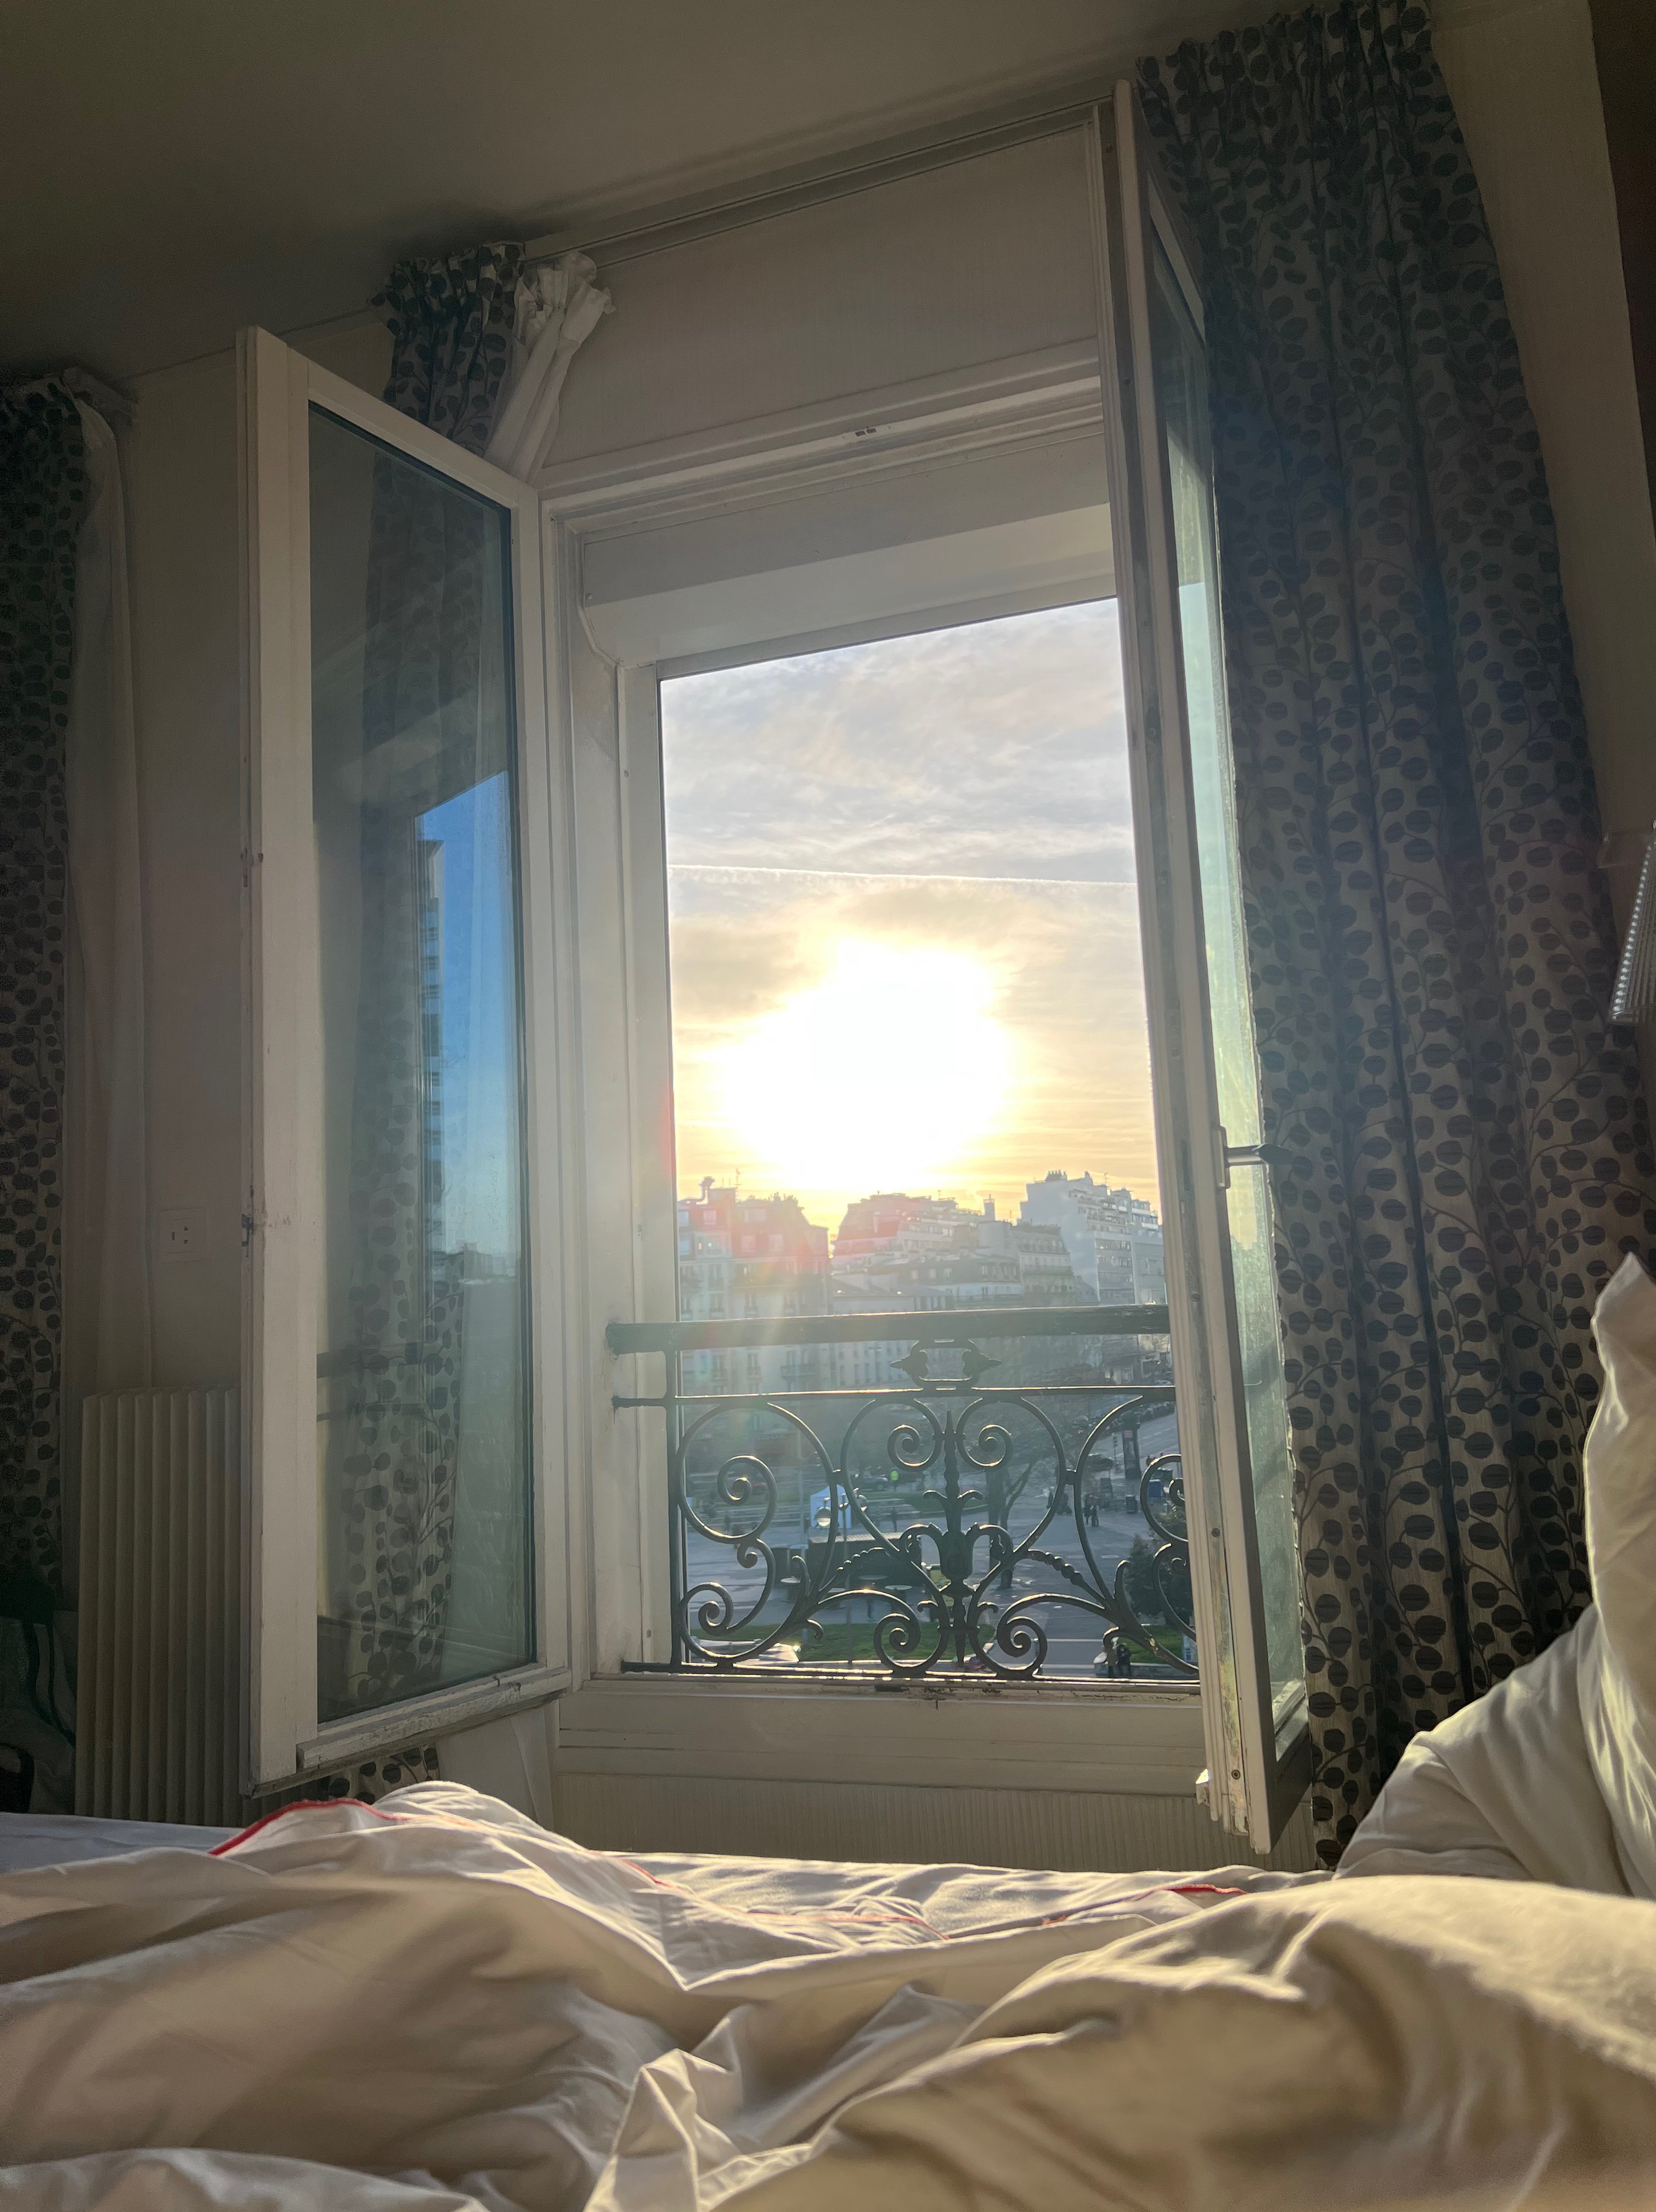 Sonnenaufgang in unserem Hotel